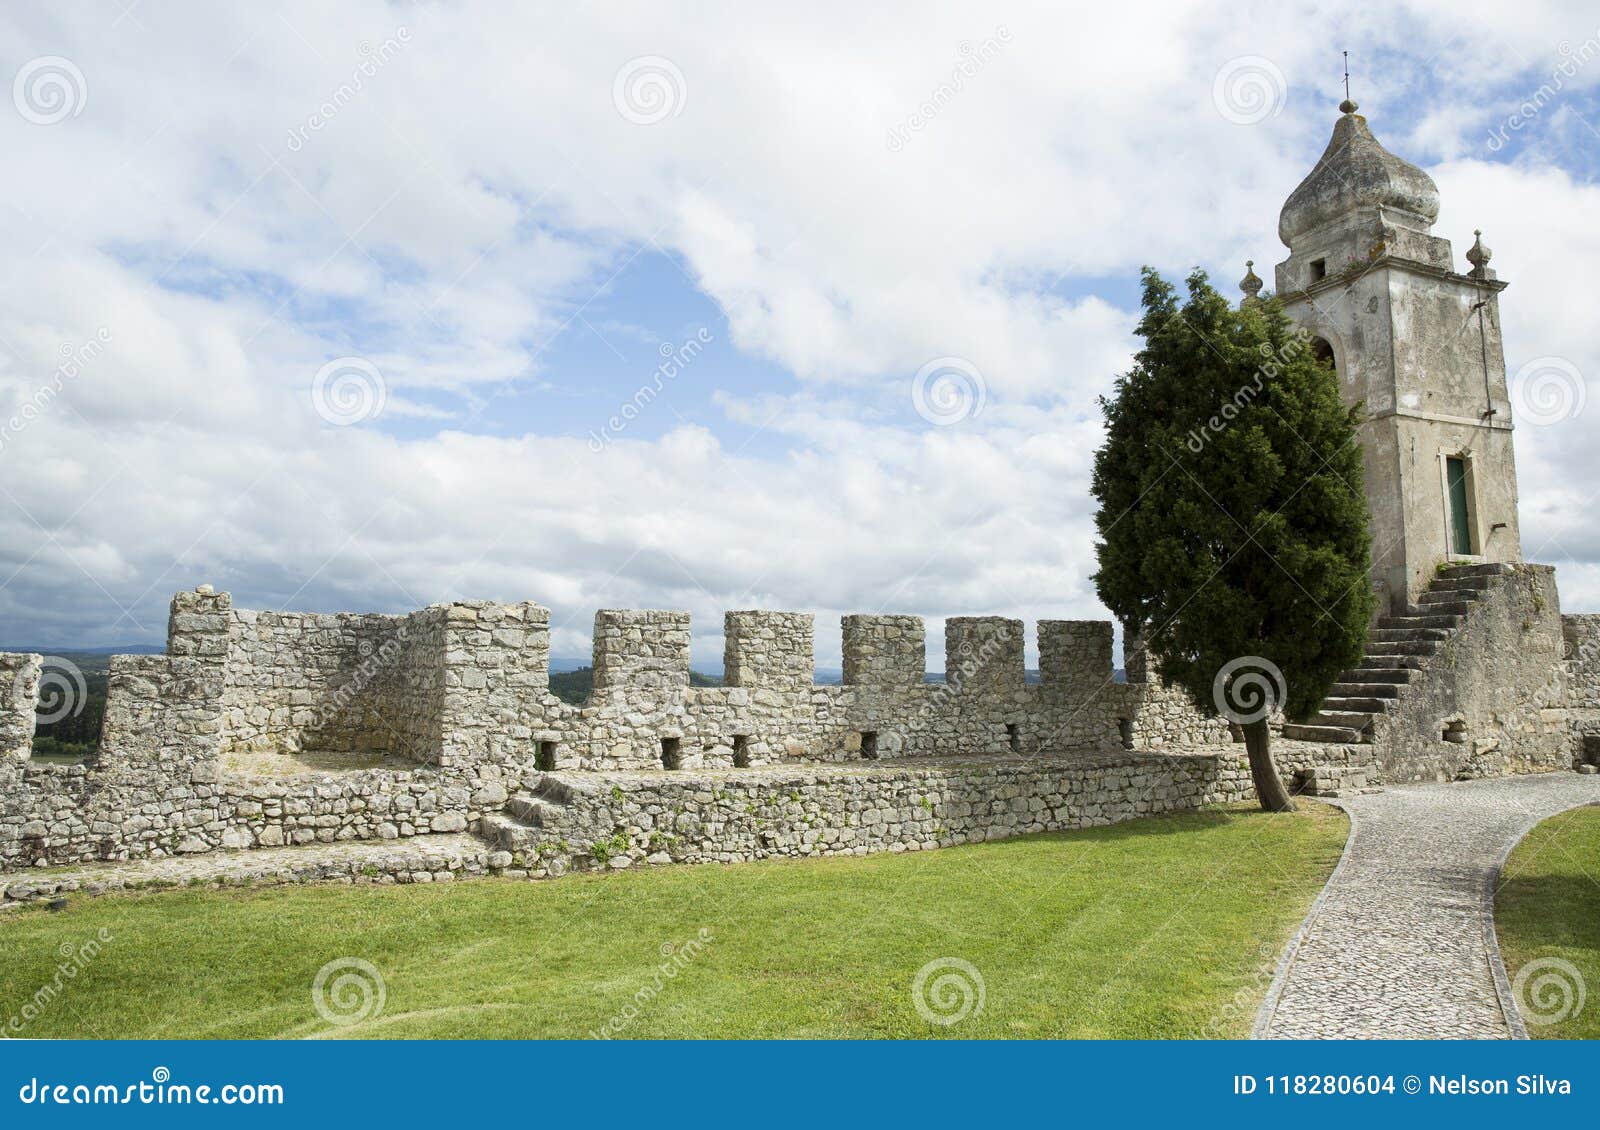 montemor-o-velho castle, in portugal